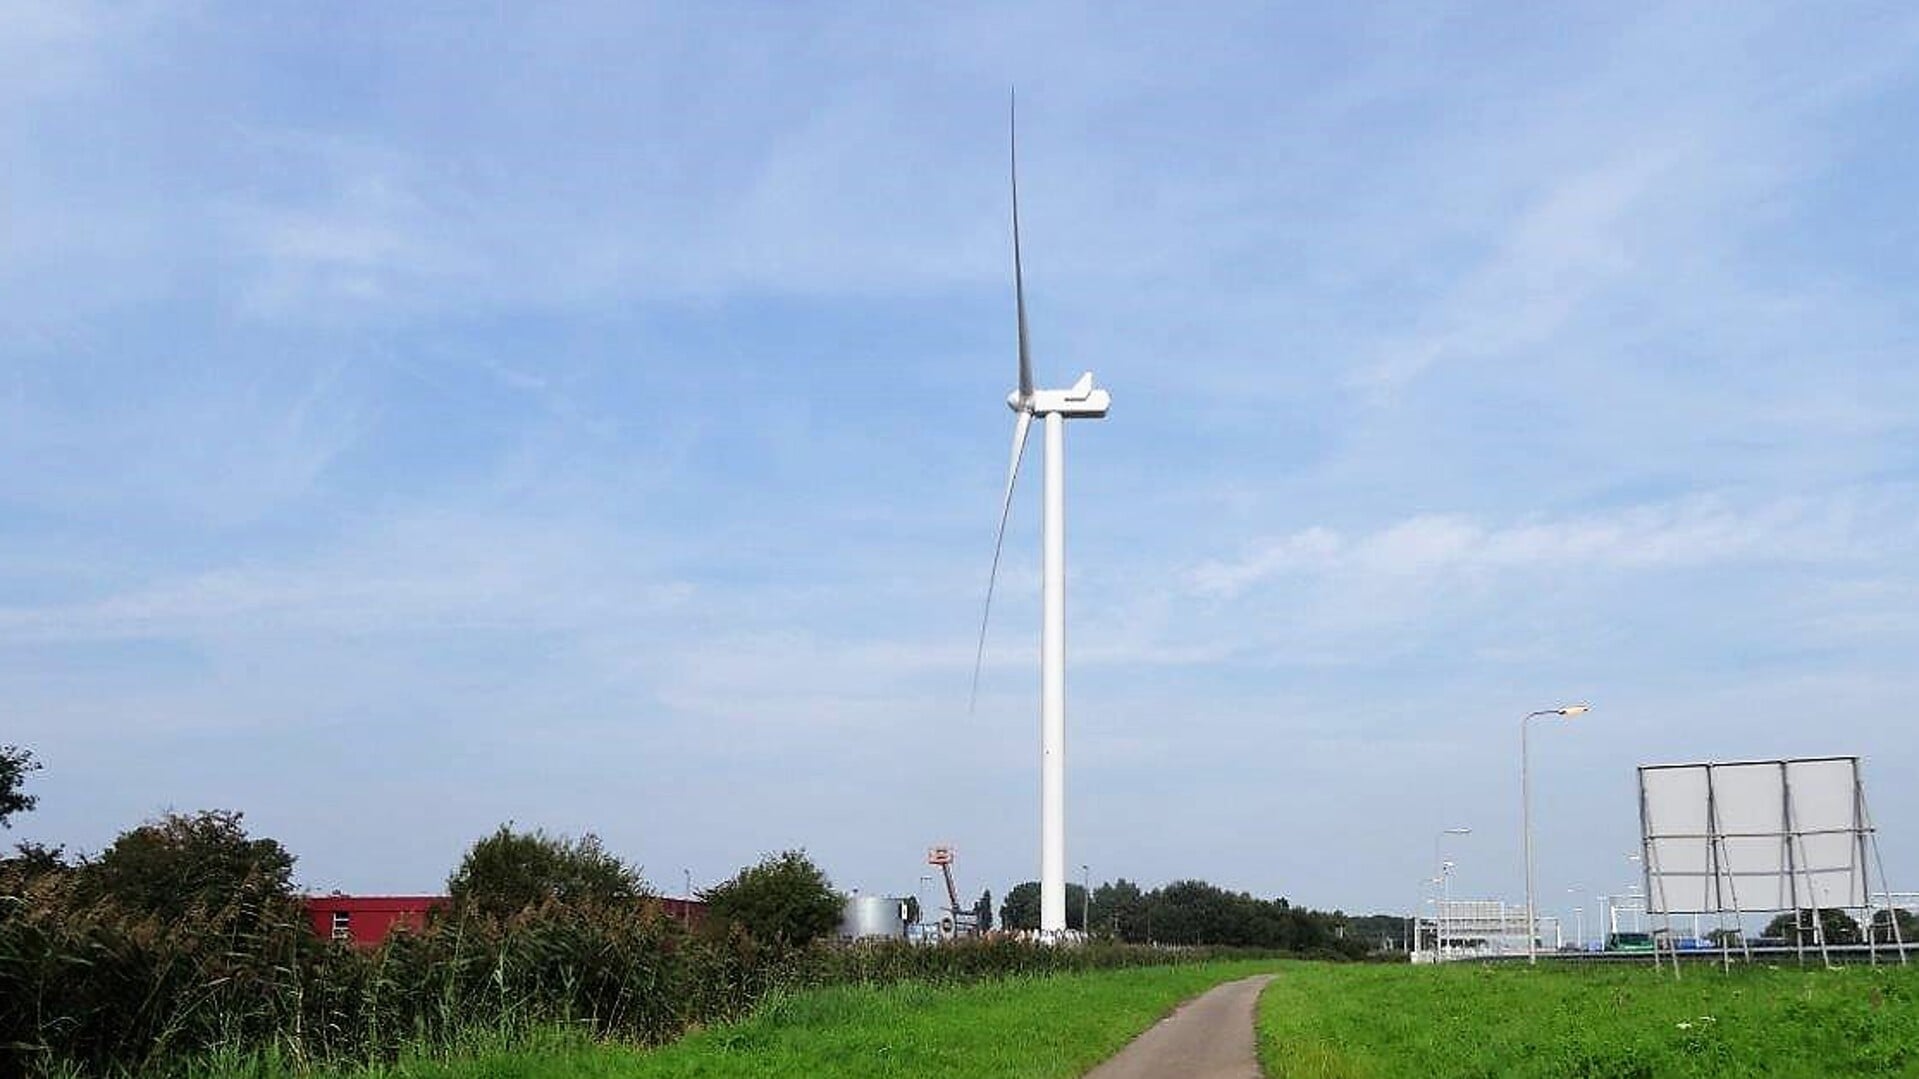 Om de duurzame opwekking van energie te bevorderen riep het CDA op om het politieke taboe op windenergie te doorbreken. (foto: Ap de Heus).